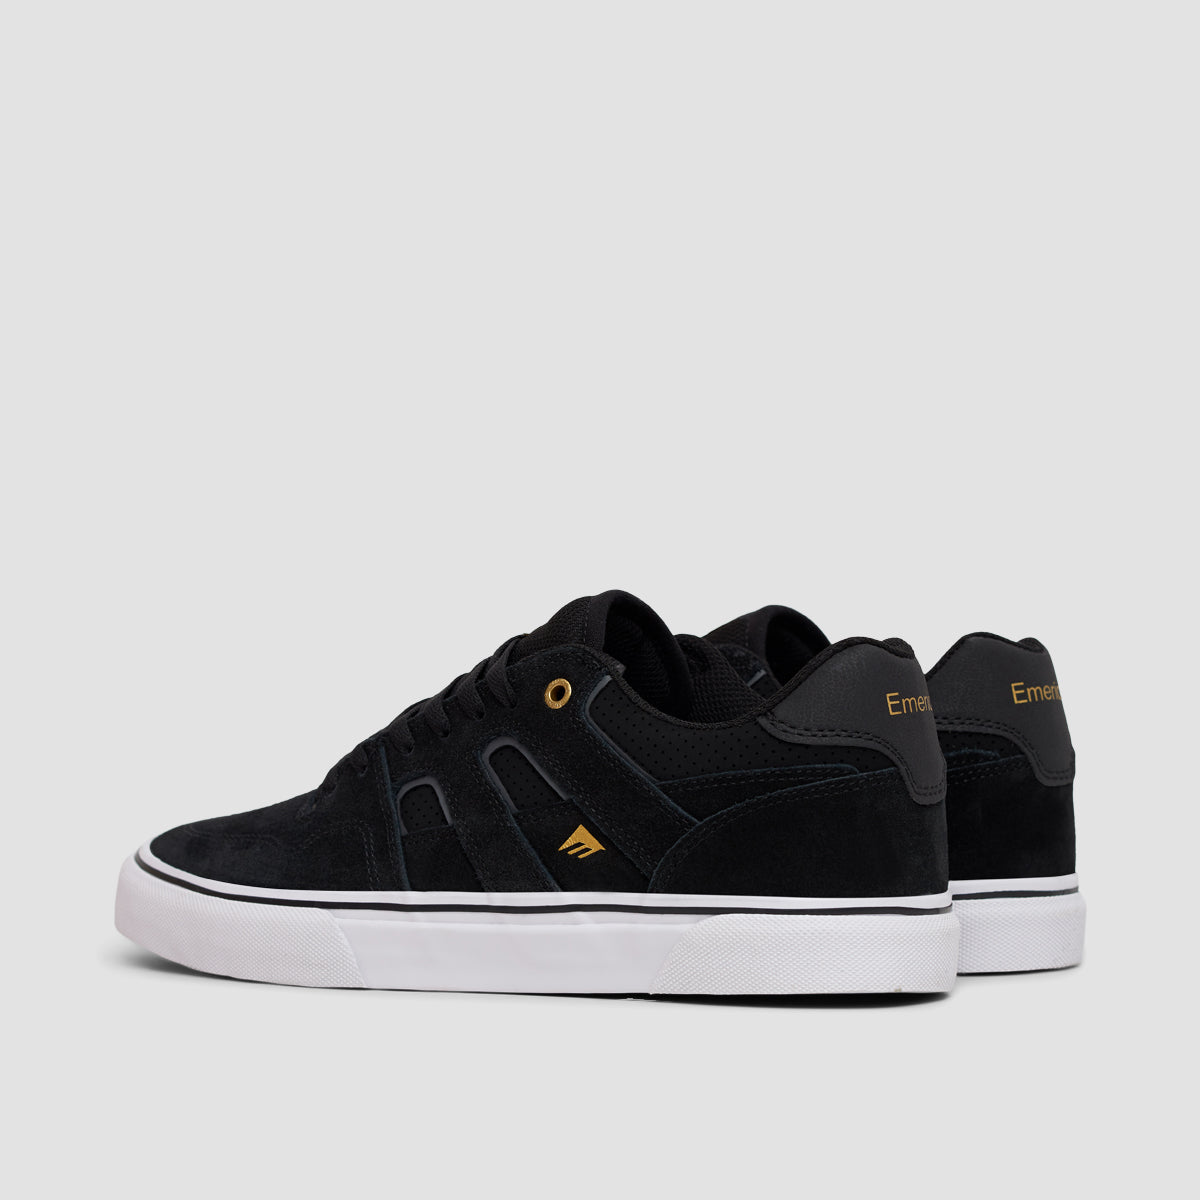 Emerica Tilt G6 Vulc Shoes - Black/White/Gold